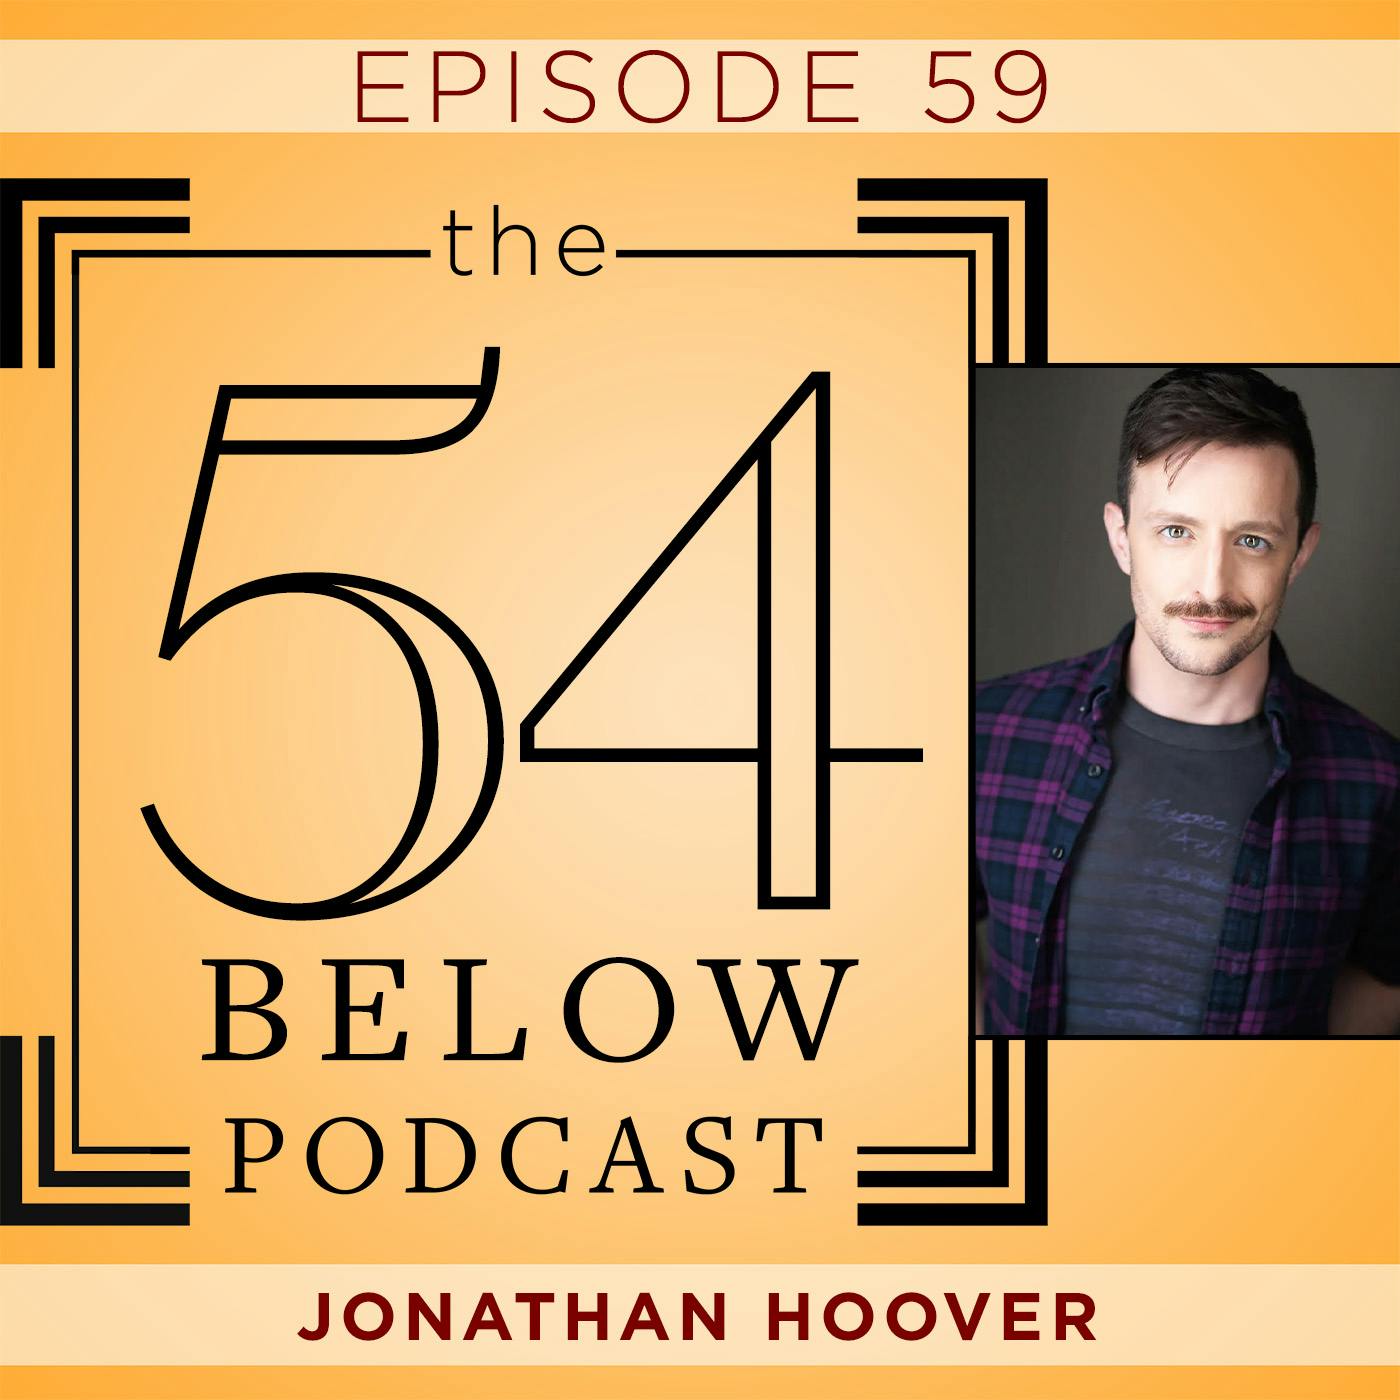 Episode 59: JONATHAN HOOVER